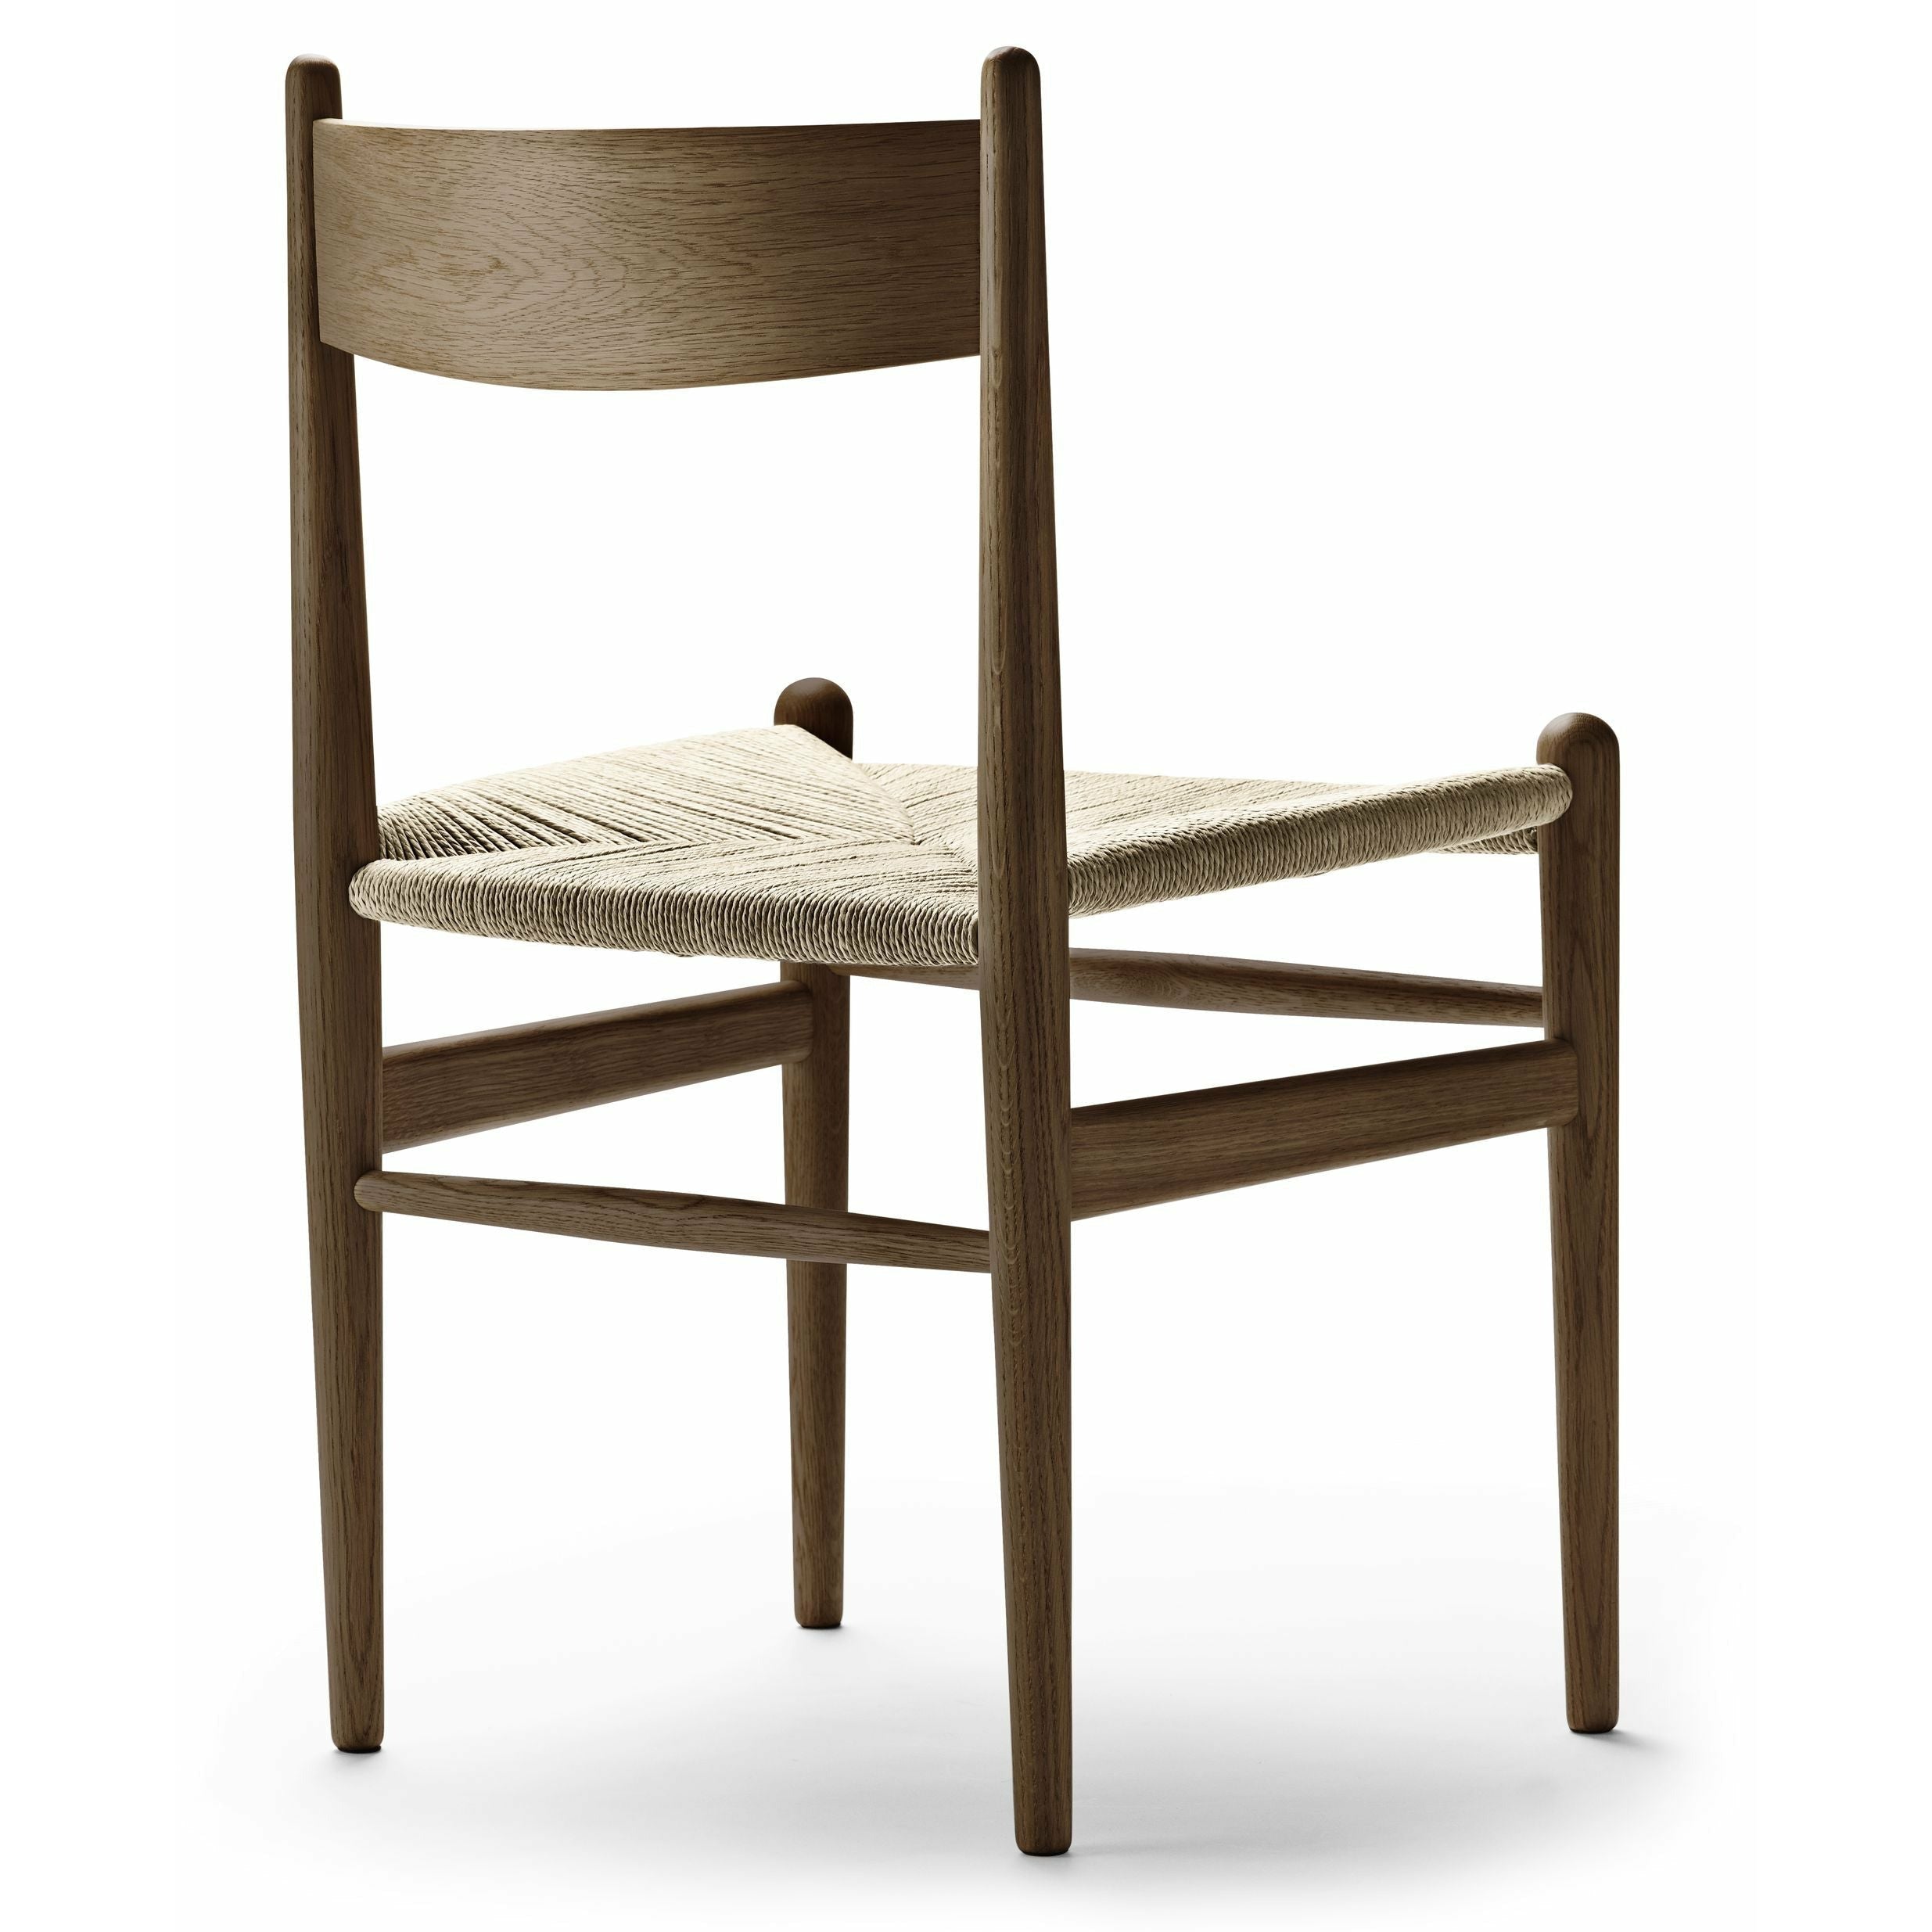 Carl Hansen Chaise chaise chaise d'huile de couleur fumée de chaise, cordon naturel